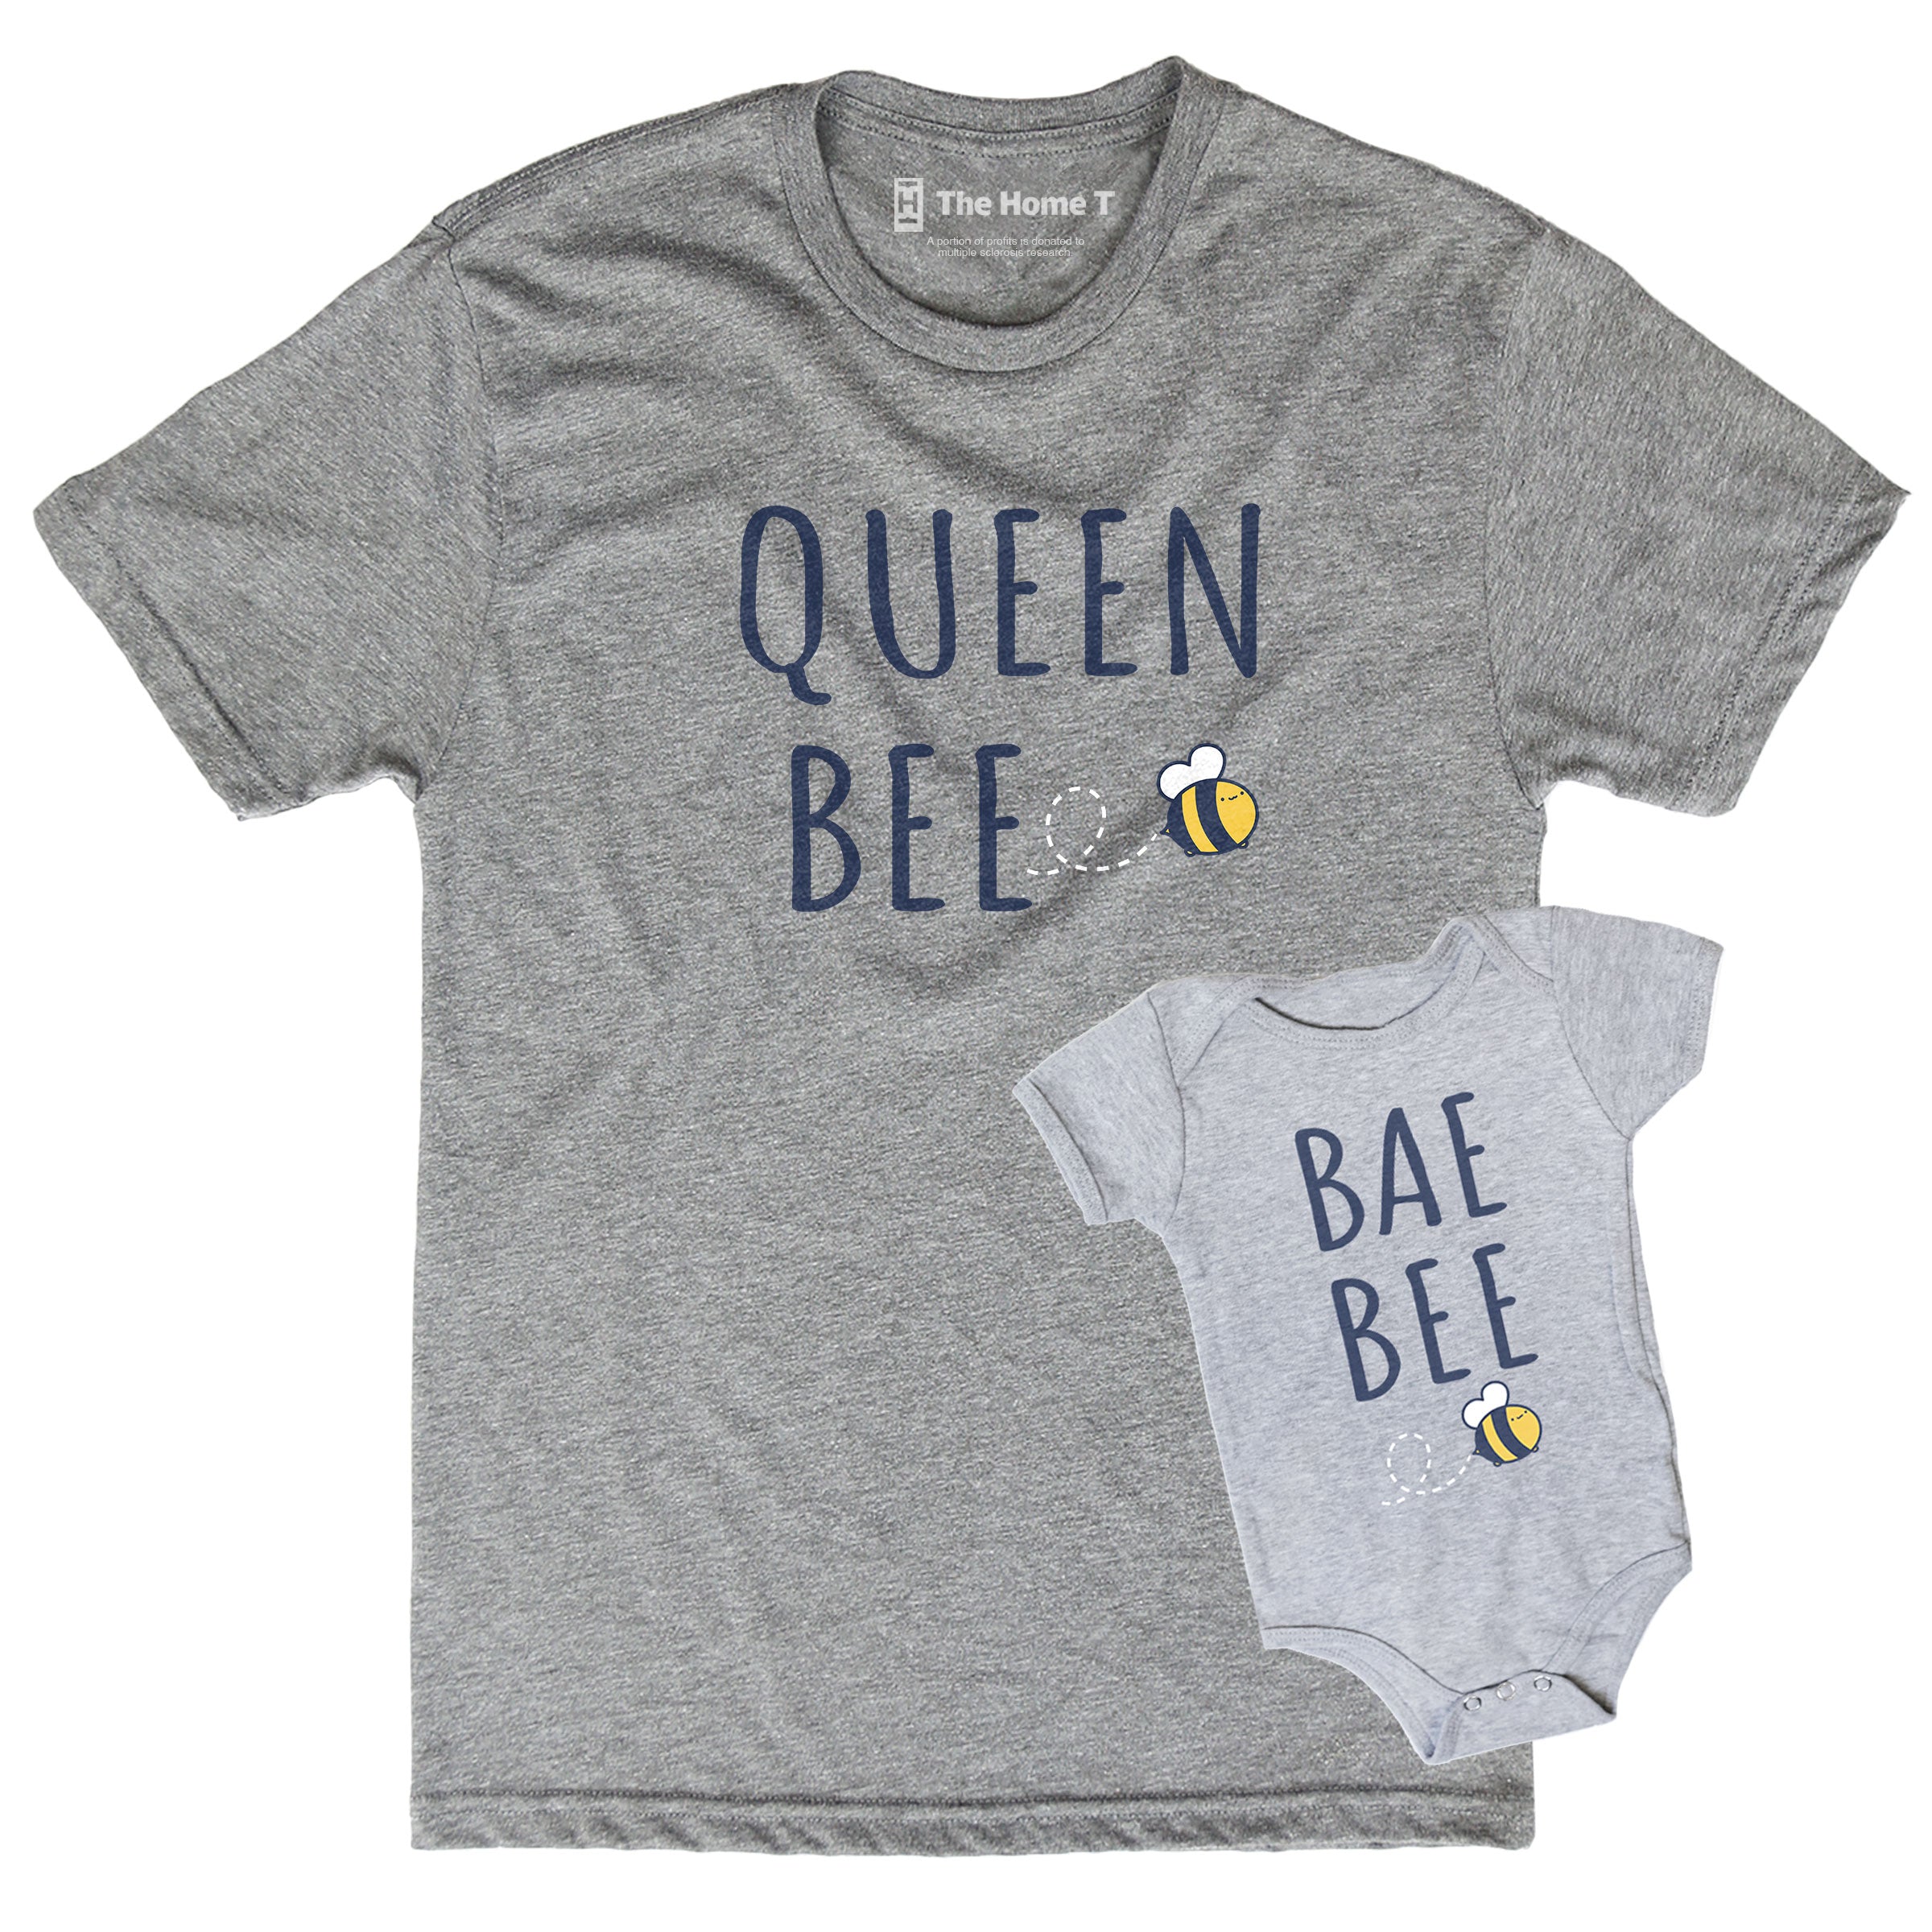 Queen Bee & Bae Bee (Matching Set)